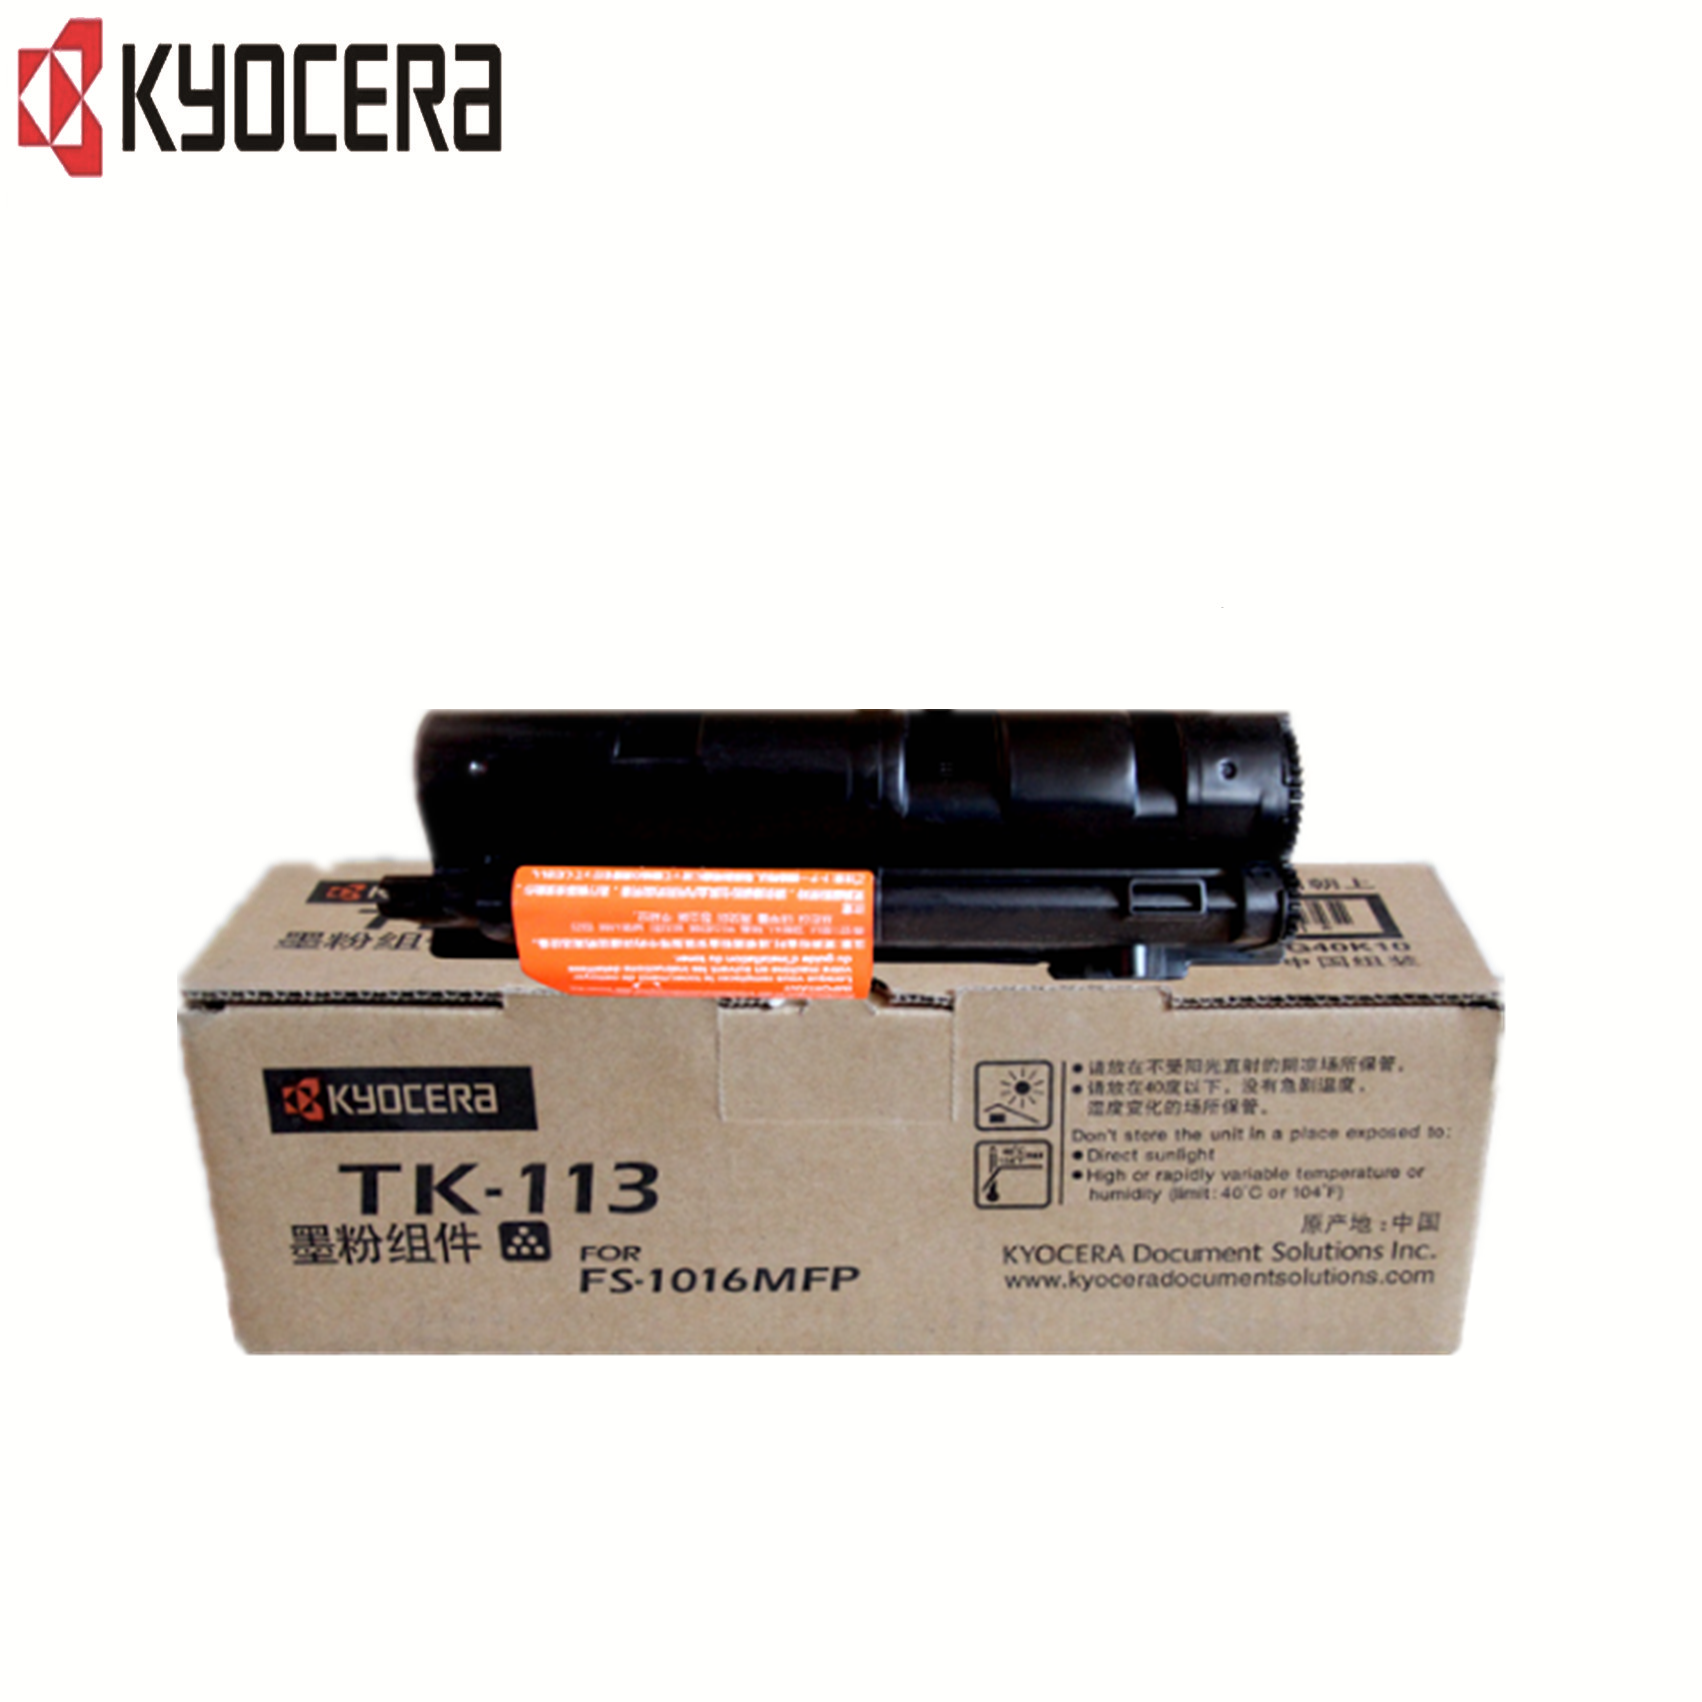 京瓷(KYOCERA)TK-113 粉盒(FS-1016mfp)hs